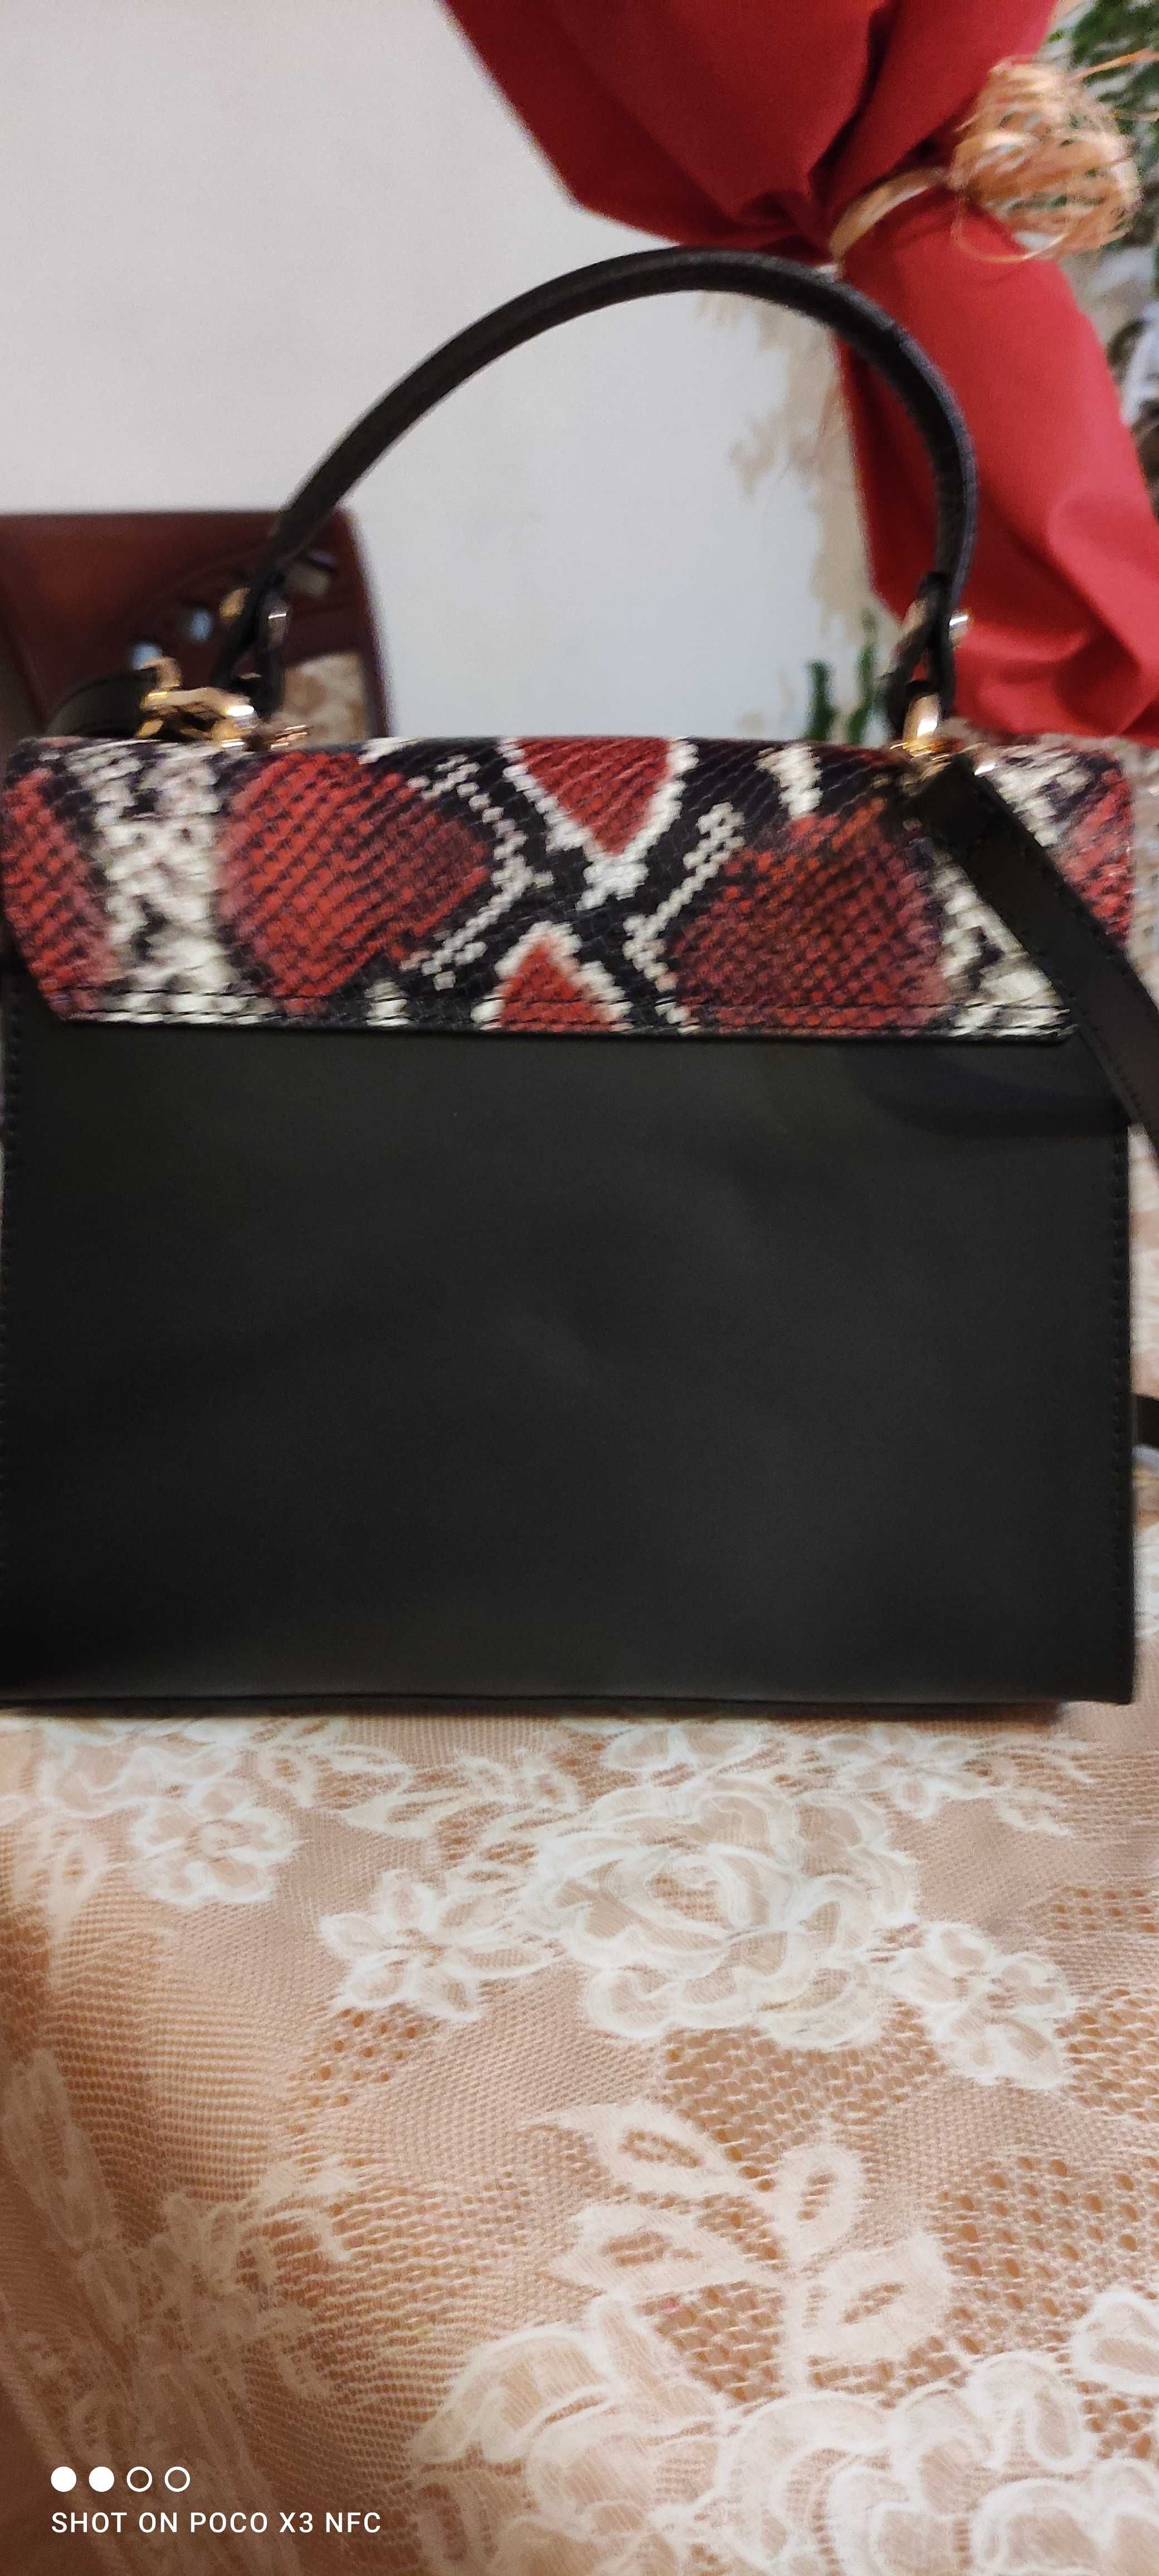 Чанта със змийски мотиви от Mia Tomazzi в червено и черно